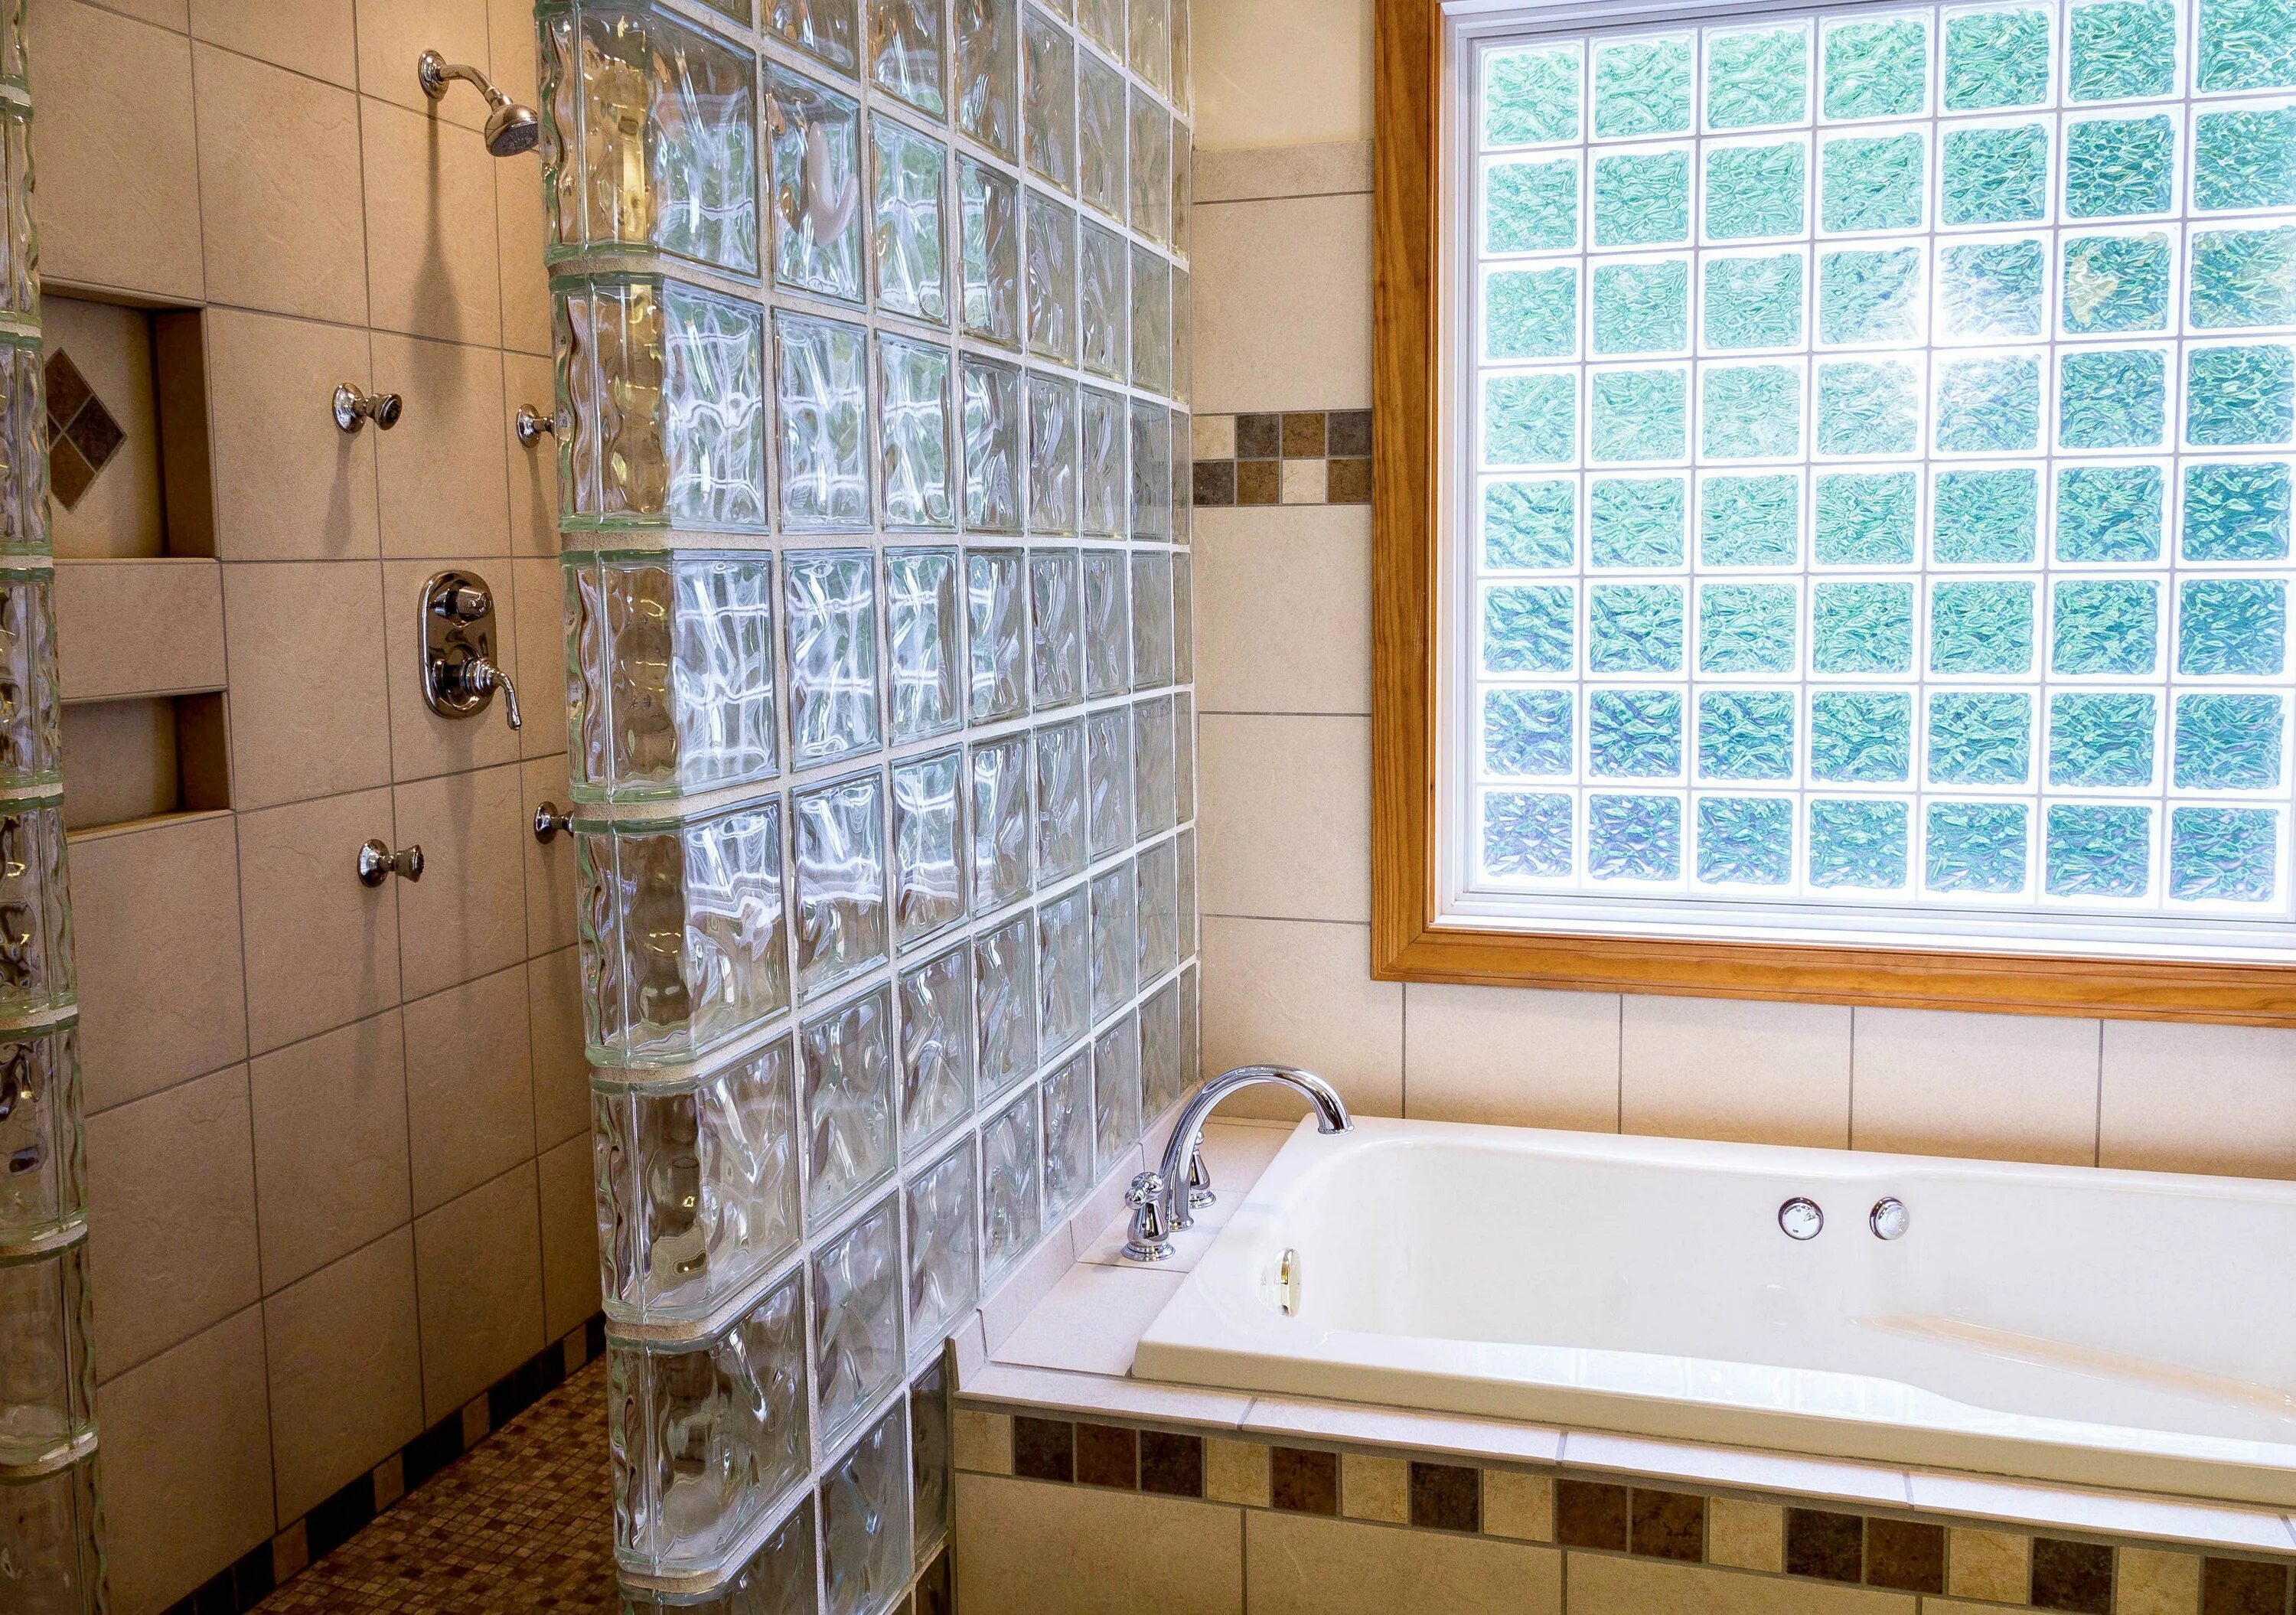 Теплые стены в душе. Стеклоблоки в ванной. Стена из стеклоблоков в ванной. Перегородка из стеклянных блоков в ванной. Перегородка из стеклоблоков в ванной.